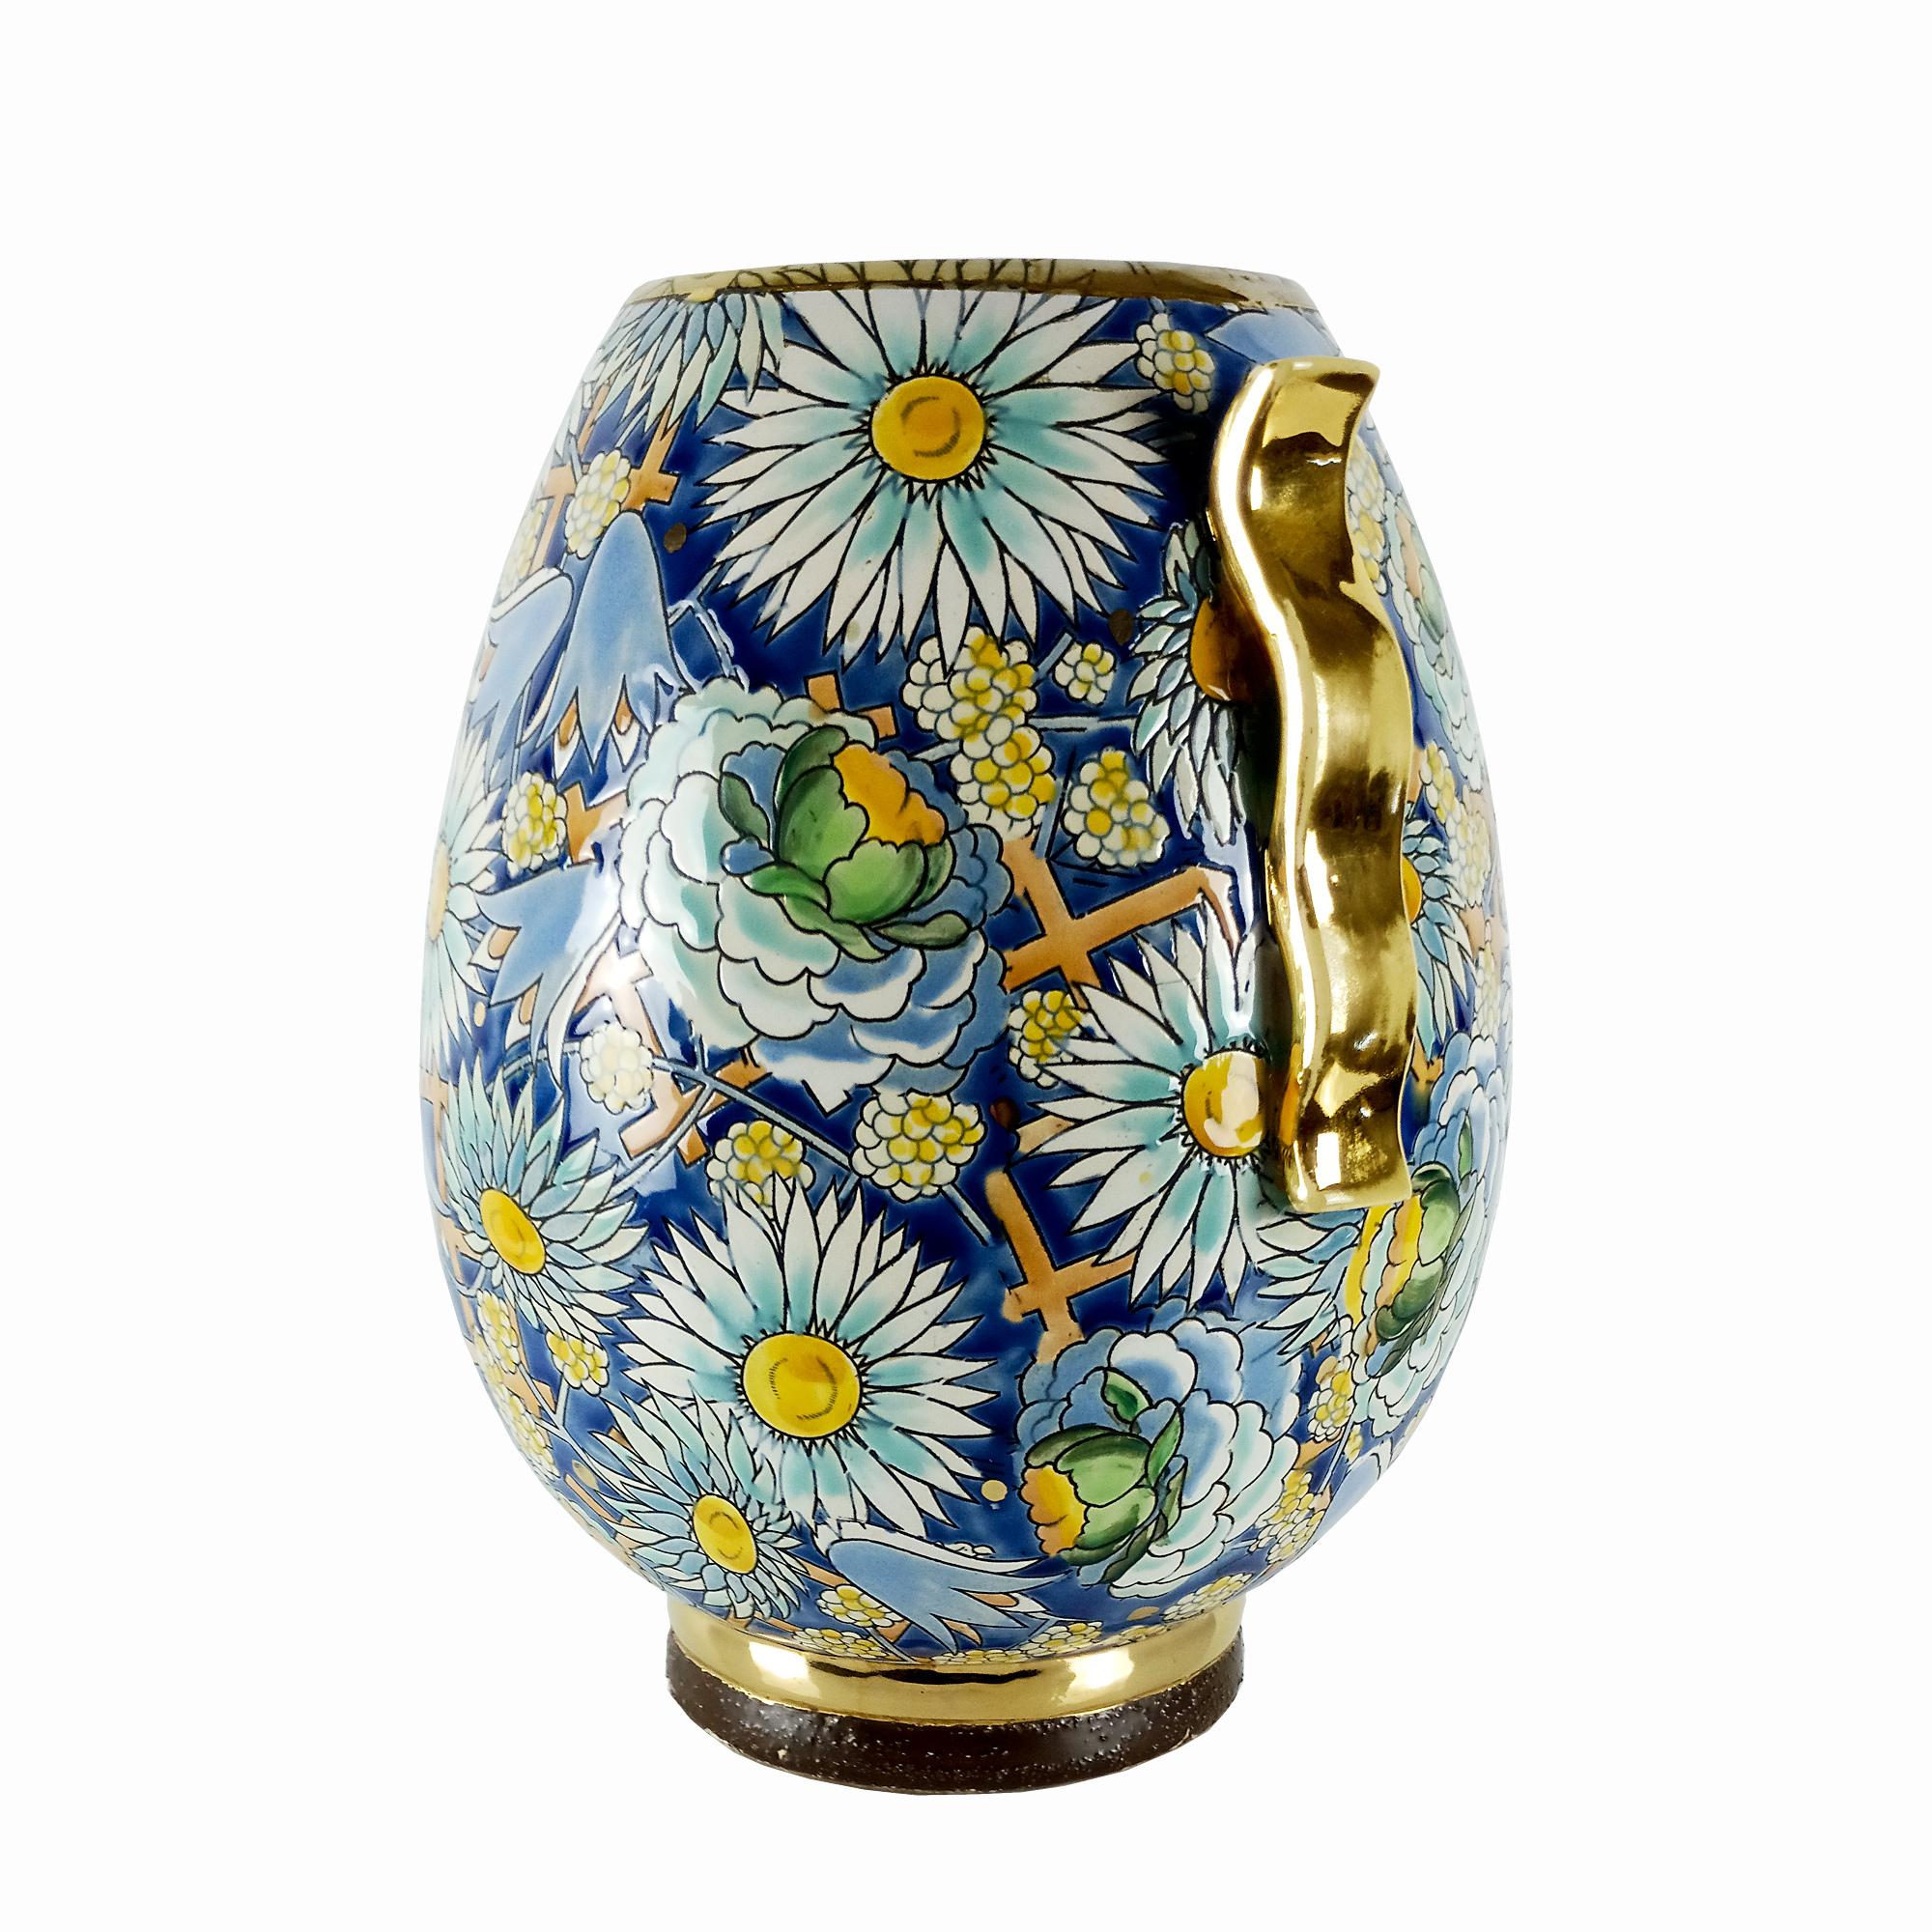 Vase Art Déco en céramique émaillée avec des motifs floraux et géométriques, poignées et base partiellement dorées.
Créé par Raymond Chevallier (1900-1959), successeur de Charles Catteau.
Production : Boch La Louviers.

A.I.C. C.C.